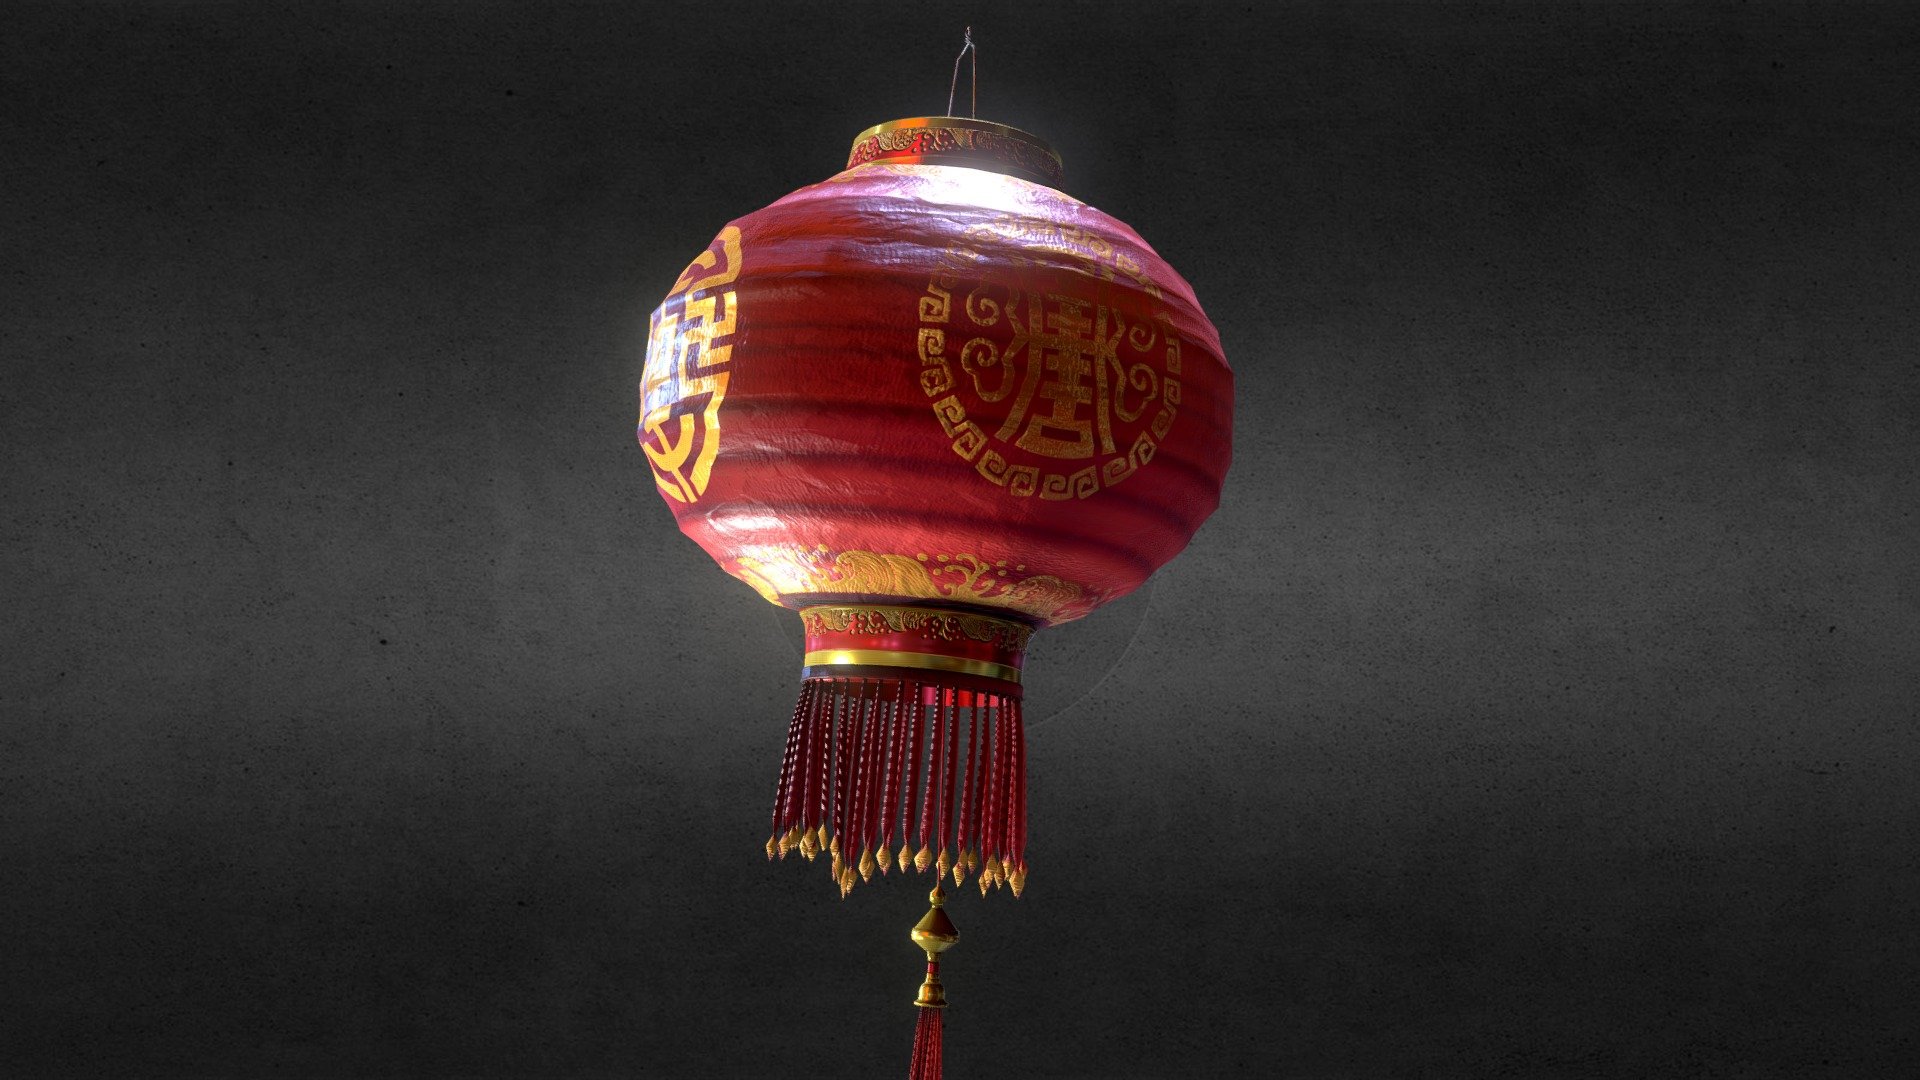 Chinese Lamp